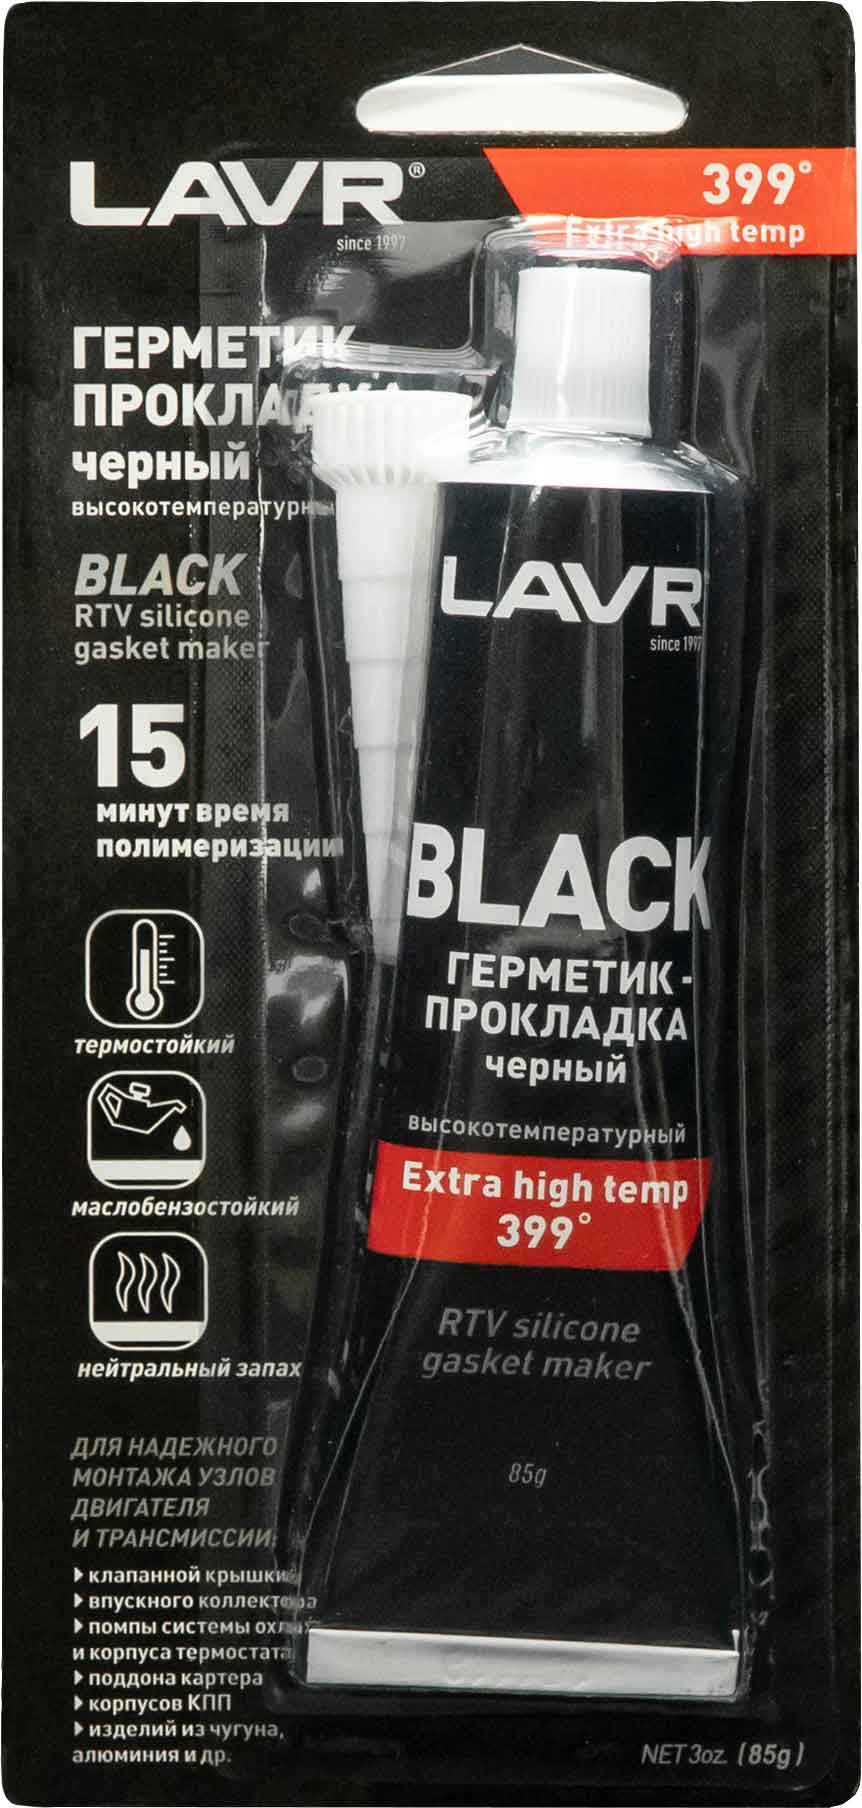 LN1738 LAVR Герметик-прокладка Черный Высокотемпературный